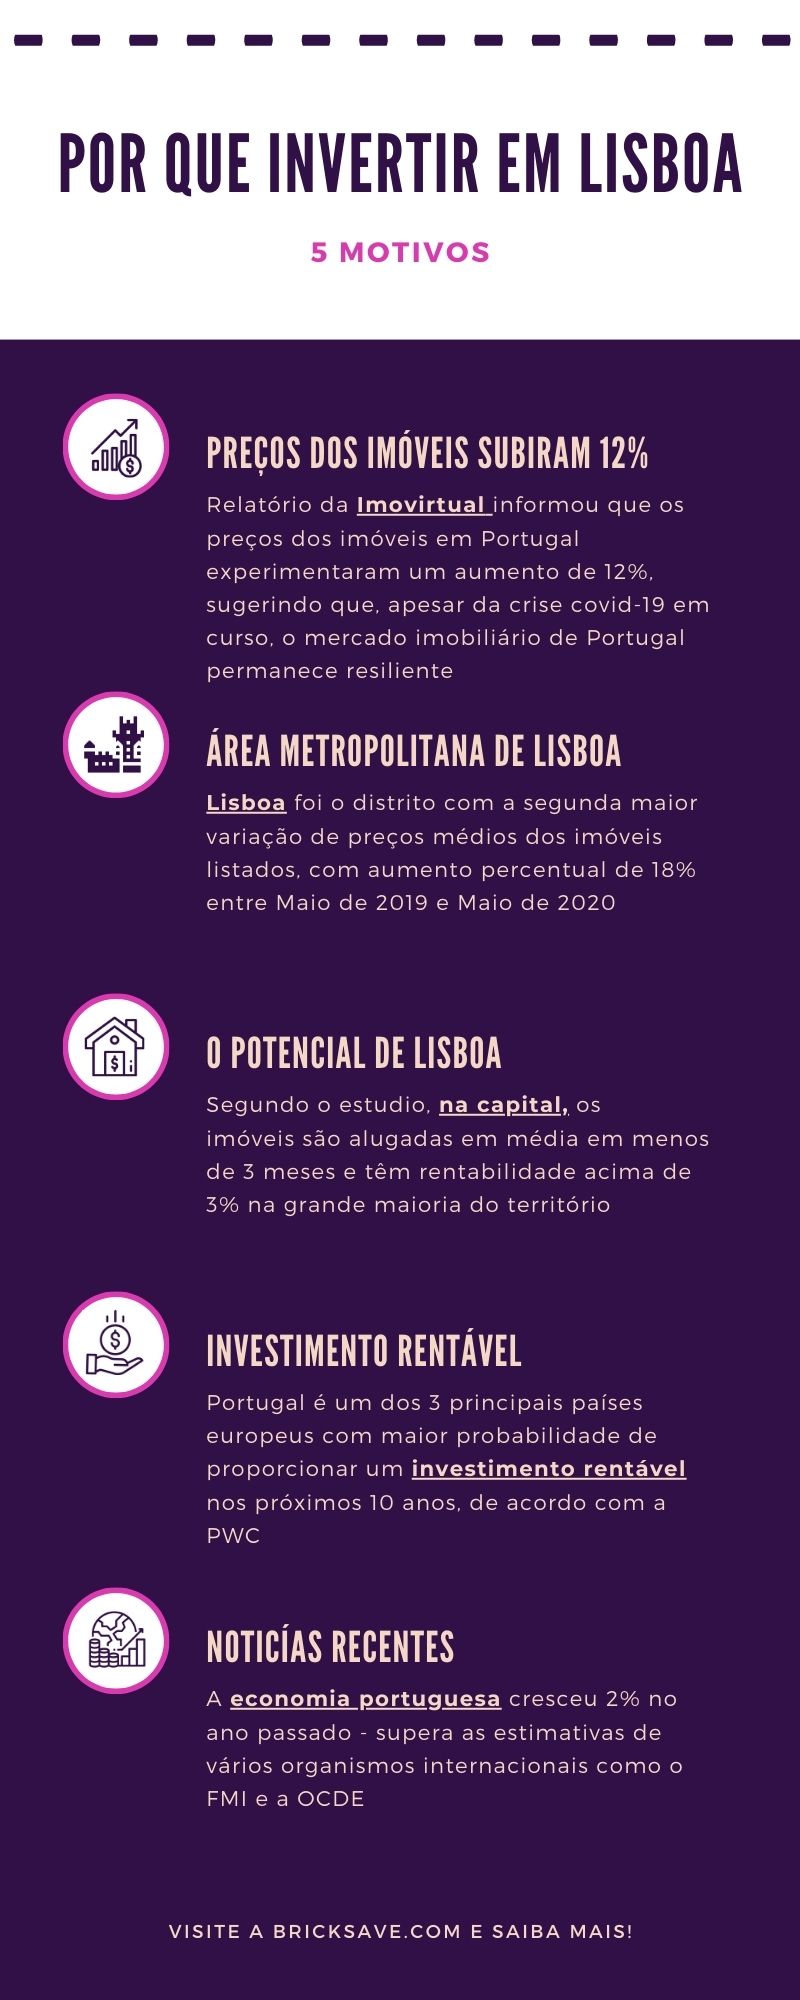 Por que investir em Lisboa